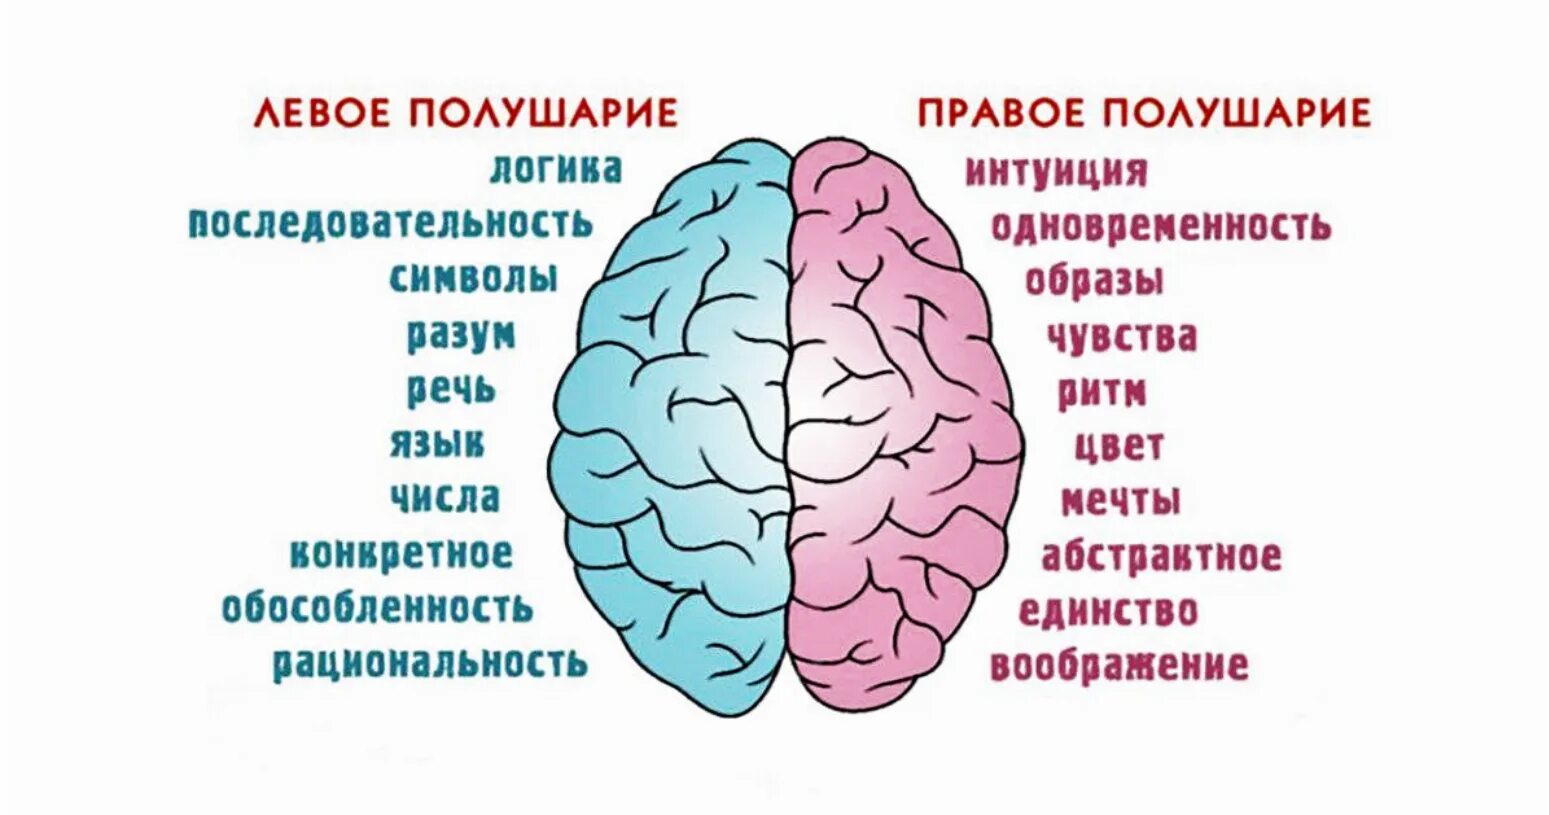 Малые полушария. Полушария мозга девое т правое. За что отвечает правое полушарие. За что отвечают полушария головного мозга человека левое и правое. За какие процессы головного мозга отвечает правое полушарие.